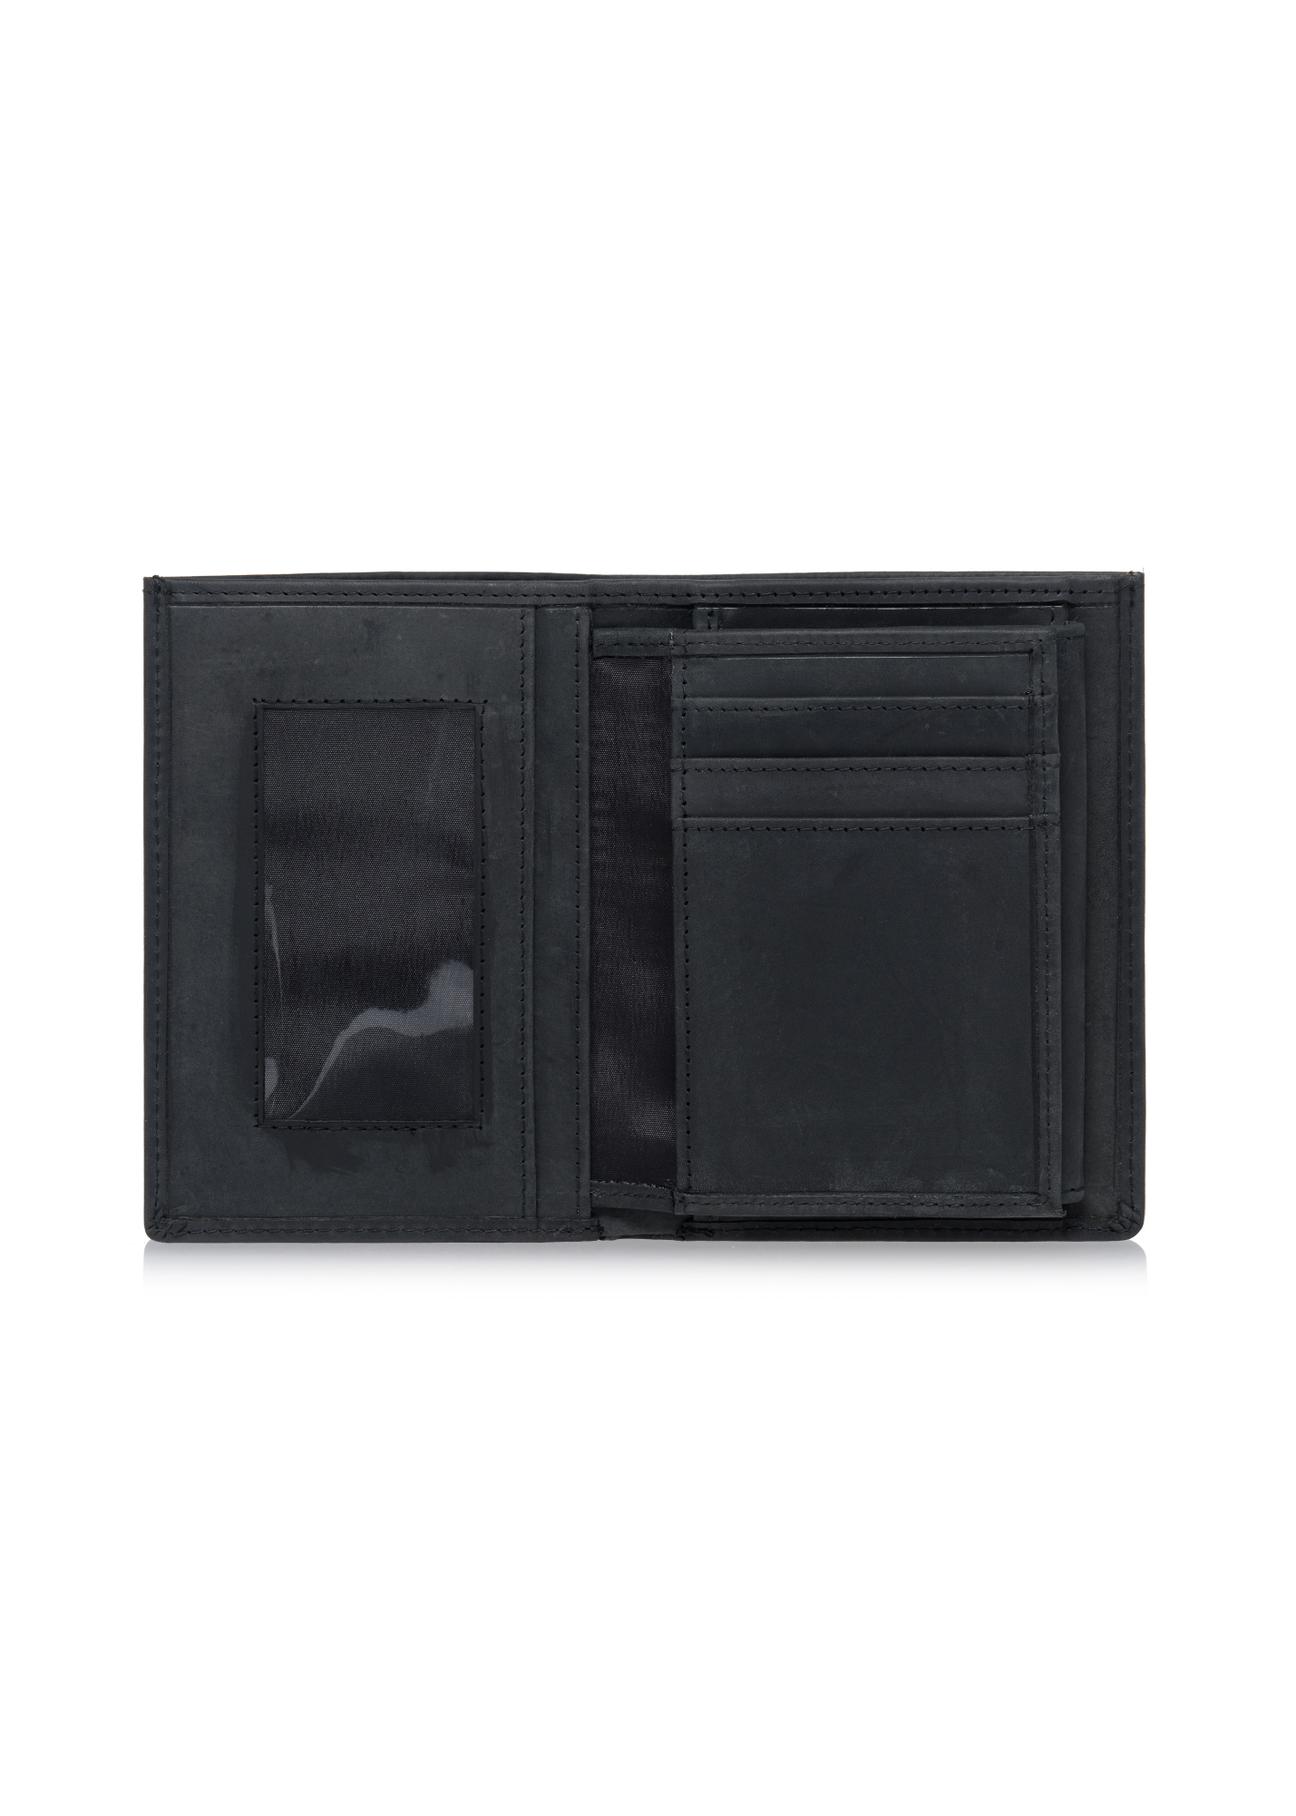 Skórzany portfel męski czarny PORMS-0545-99(W23)